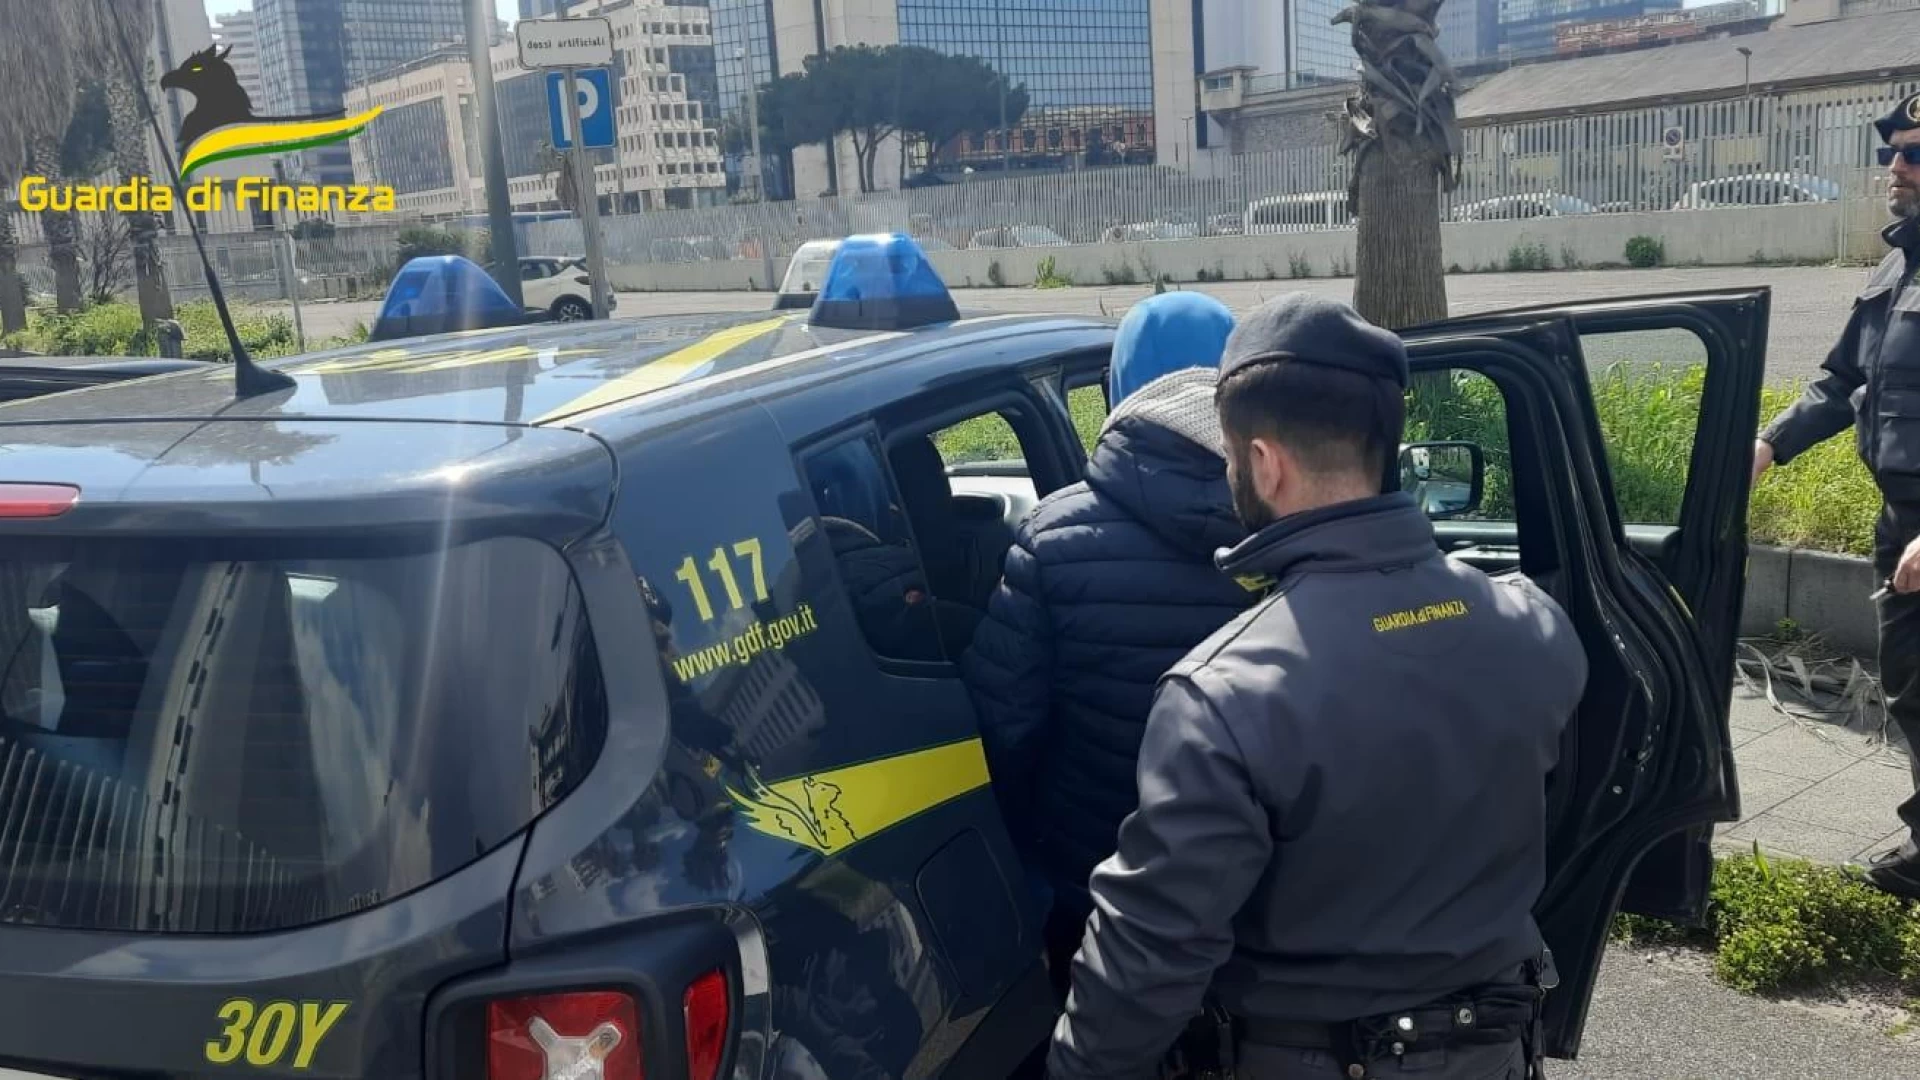 Uomini della Guardia di Finanza di Isernia arrestano uno scippatore in trasferta a Napoli.